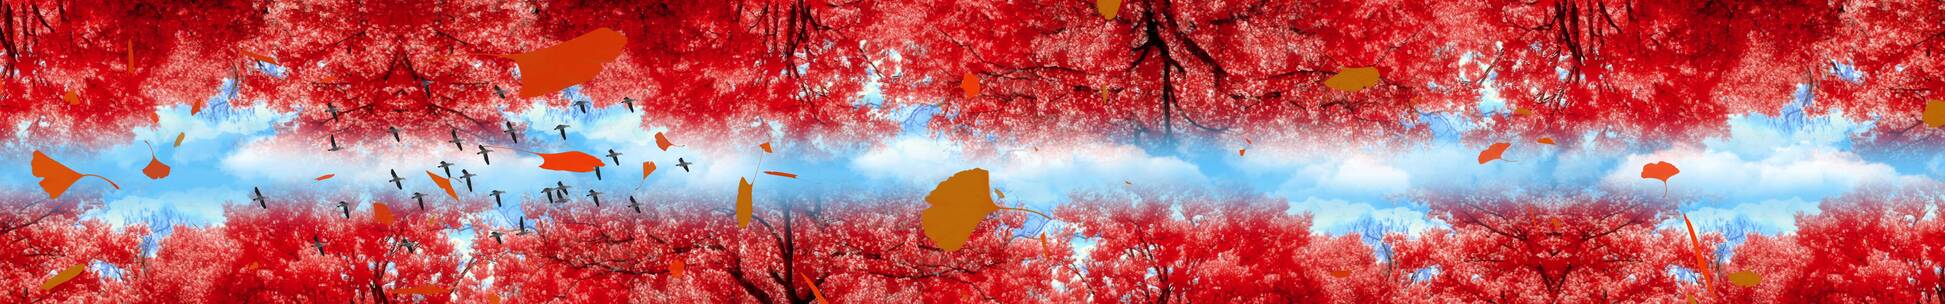 枫叶红色天幕 花瓣粒子 网红震撼天幕 春天